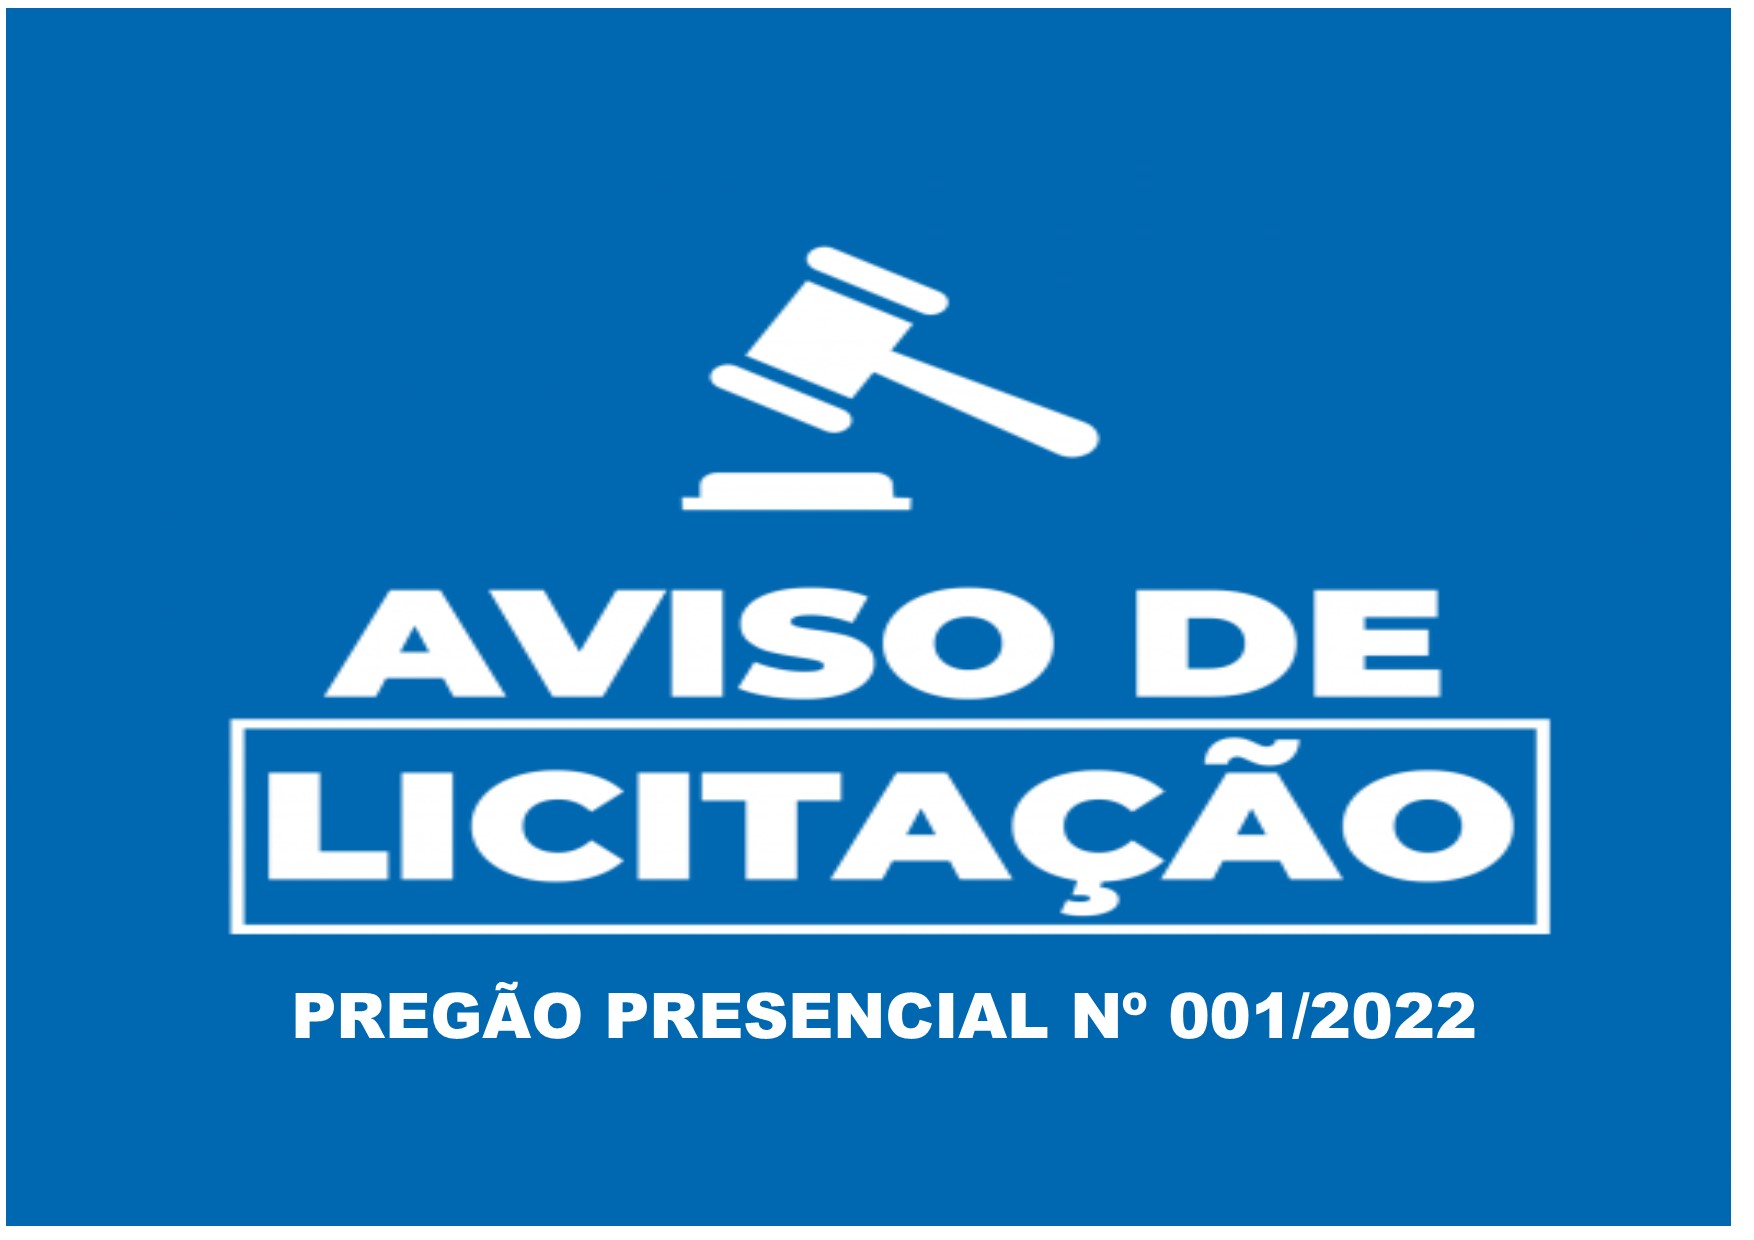 AVISO DE LICITAÇÃO PREGÃO PRESENCIAL 001/2022